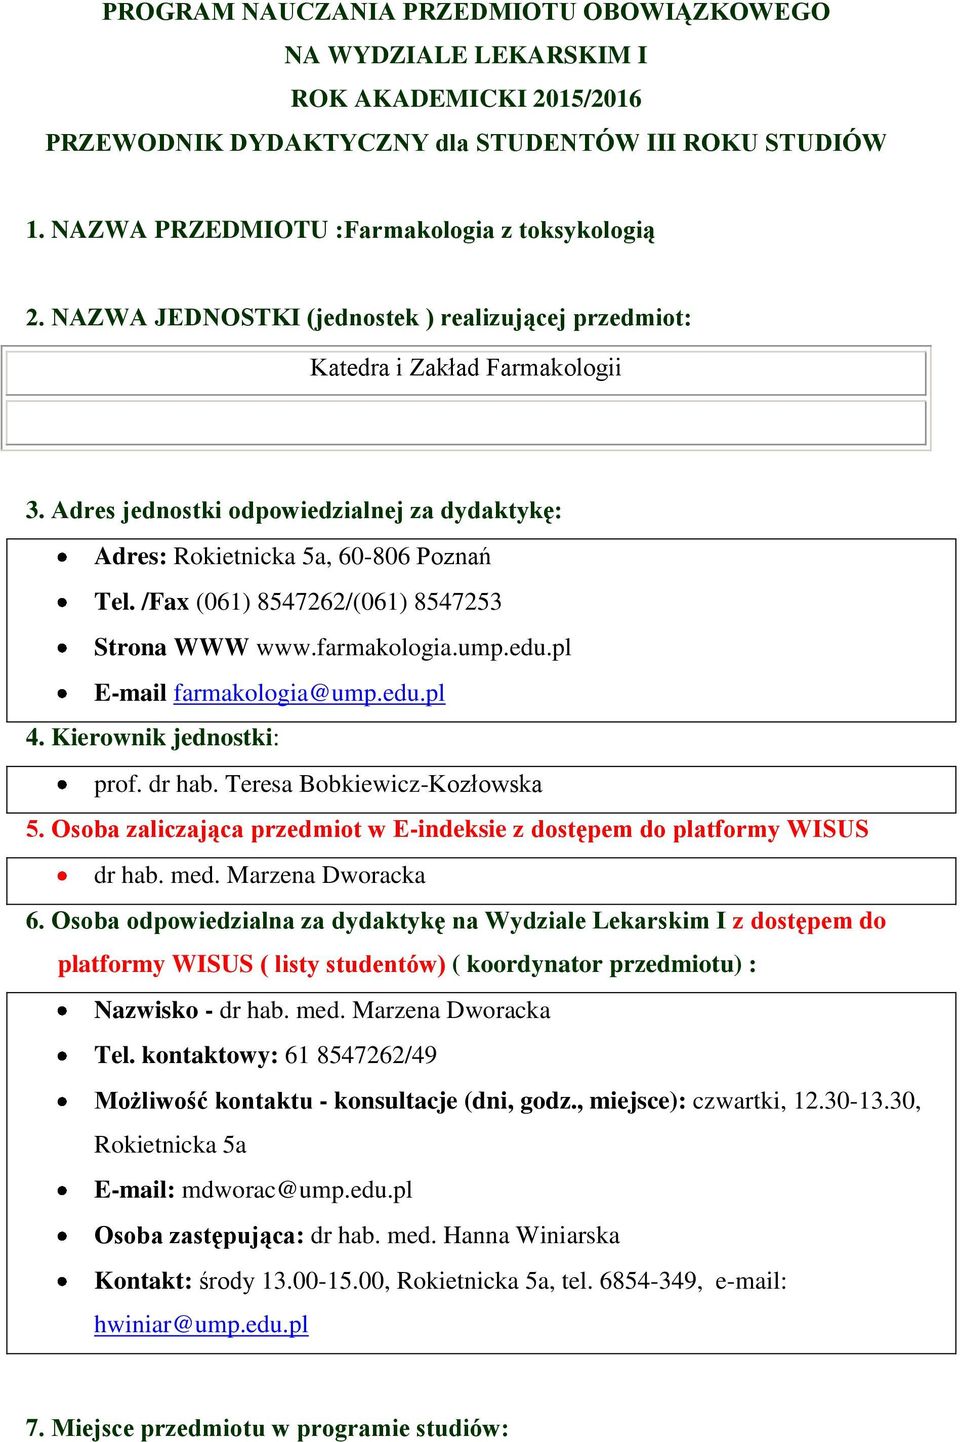 /Fax (061) 8547262/(061) 8547253 Strona WWW www.farmakologia.ump.edu.pl E-mail farmakologia@ump.edu.pl 4. Kierownik jednostki: prof. dr hab. Teresa Bobkiewicz-Kozłowska 5.